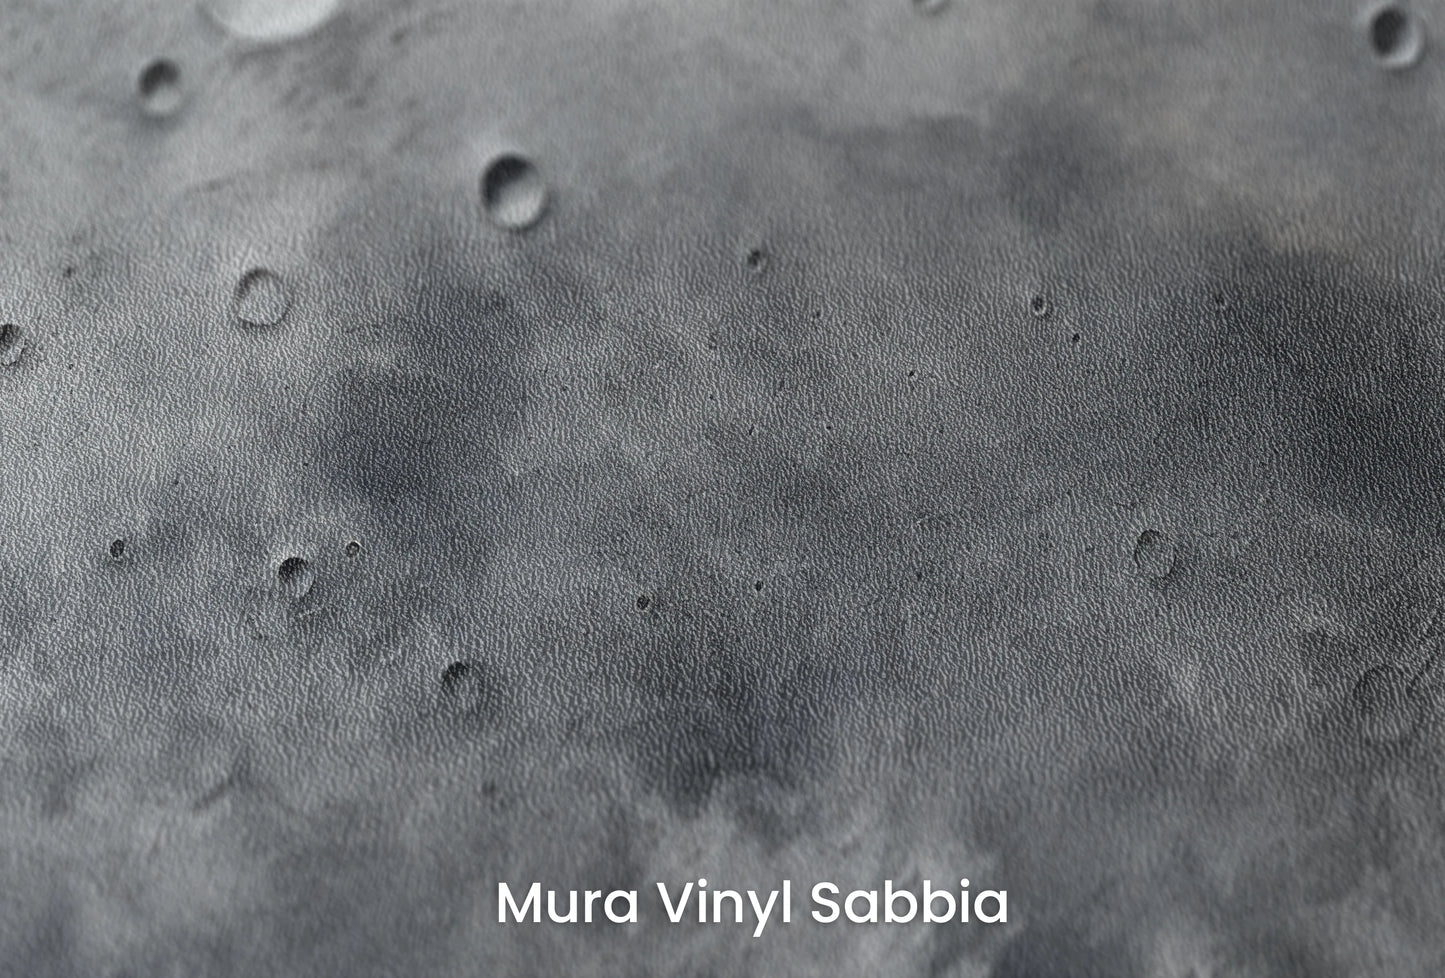 Zbliżenie na artystyczną fototapetę o nazwie Pluto's Mystery na podłożu Mura Vinyl Sabbia struktura grubego ziarna piasku.